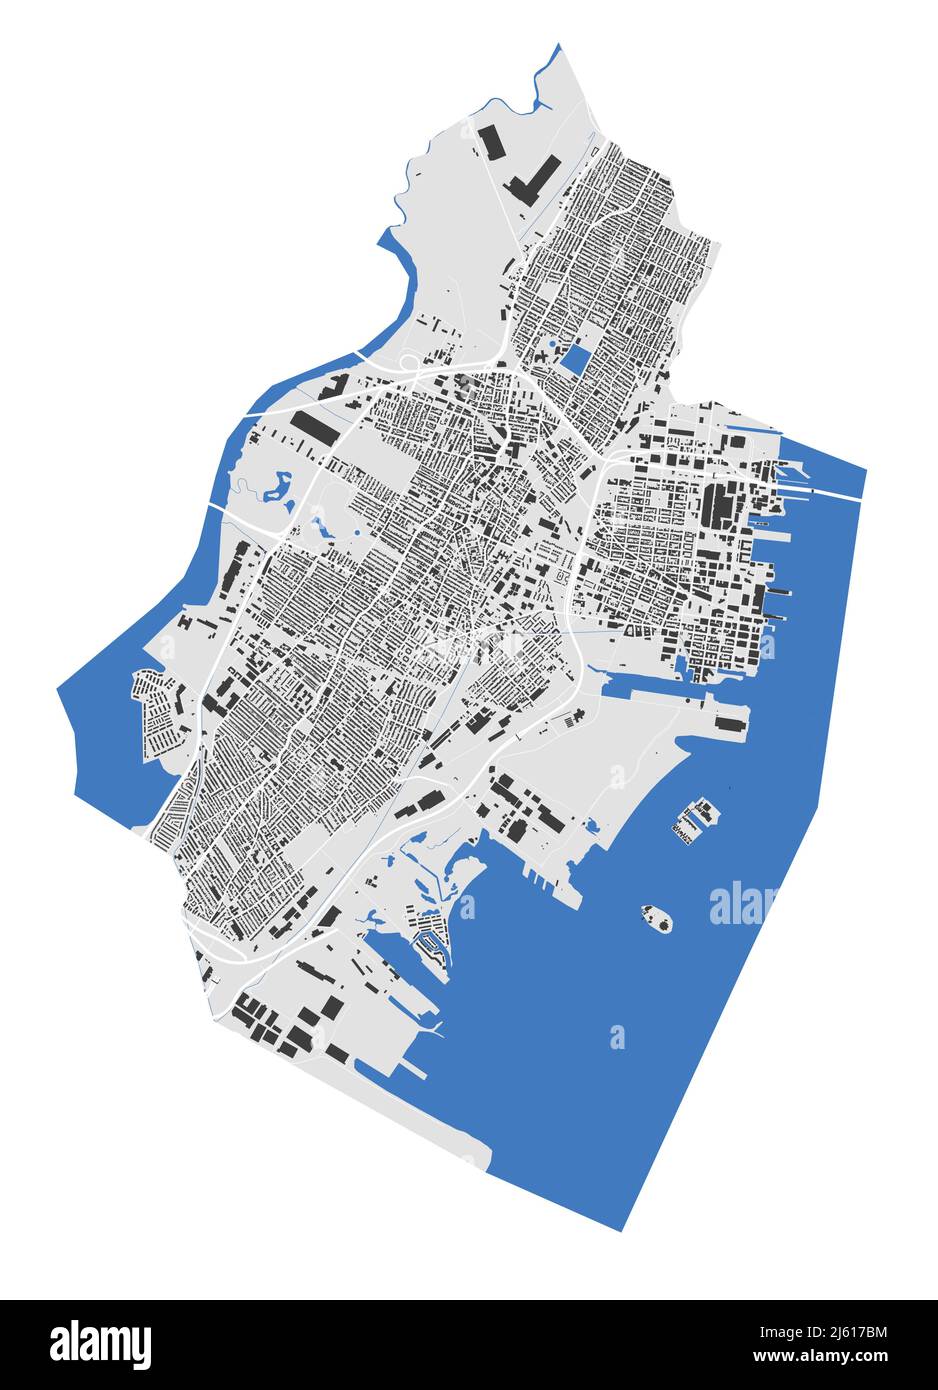 Mapa de Jersey. Mapa detallado del área administrativa de la ciudad de Jersey. Panorama de la ciudad. Ilustración vectorial sin derechos de autor. Mapa de contornos con edificios, agua, Ilustración del Vector